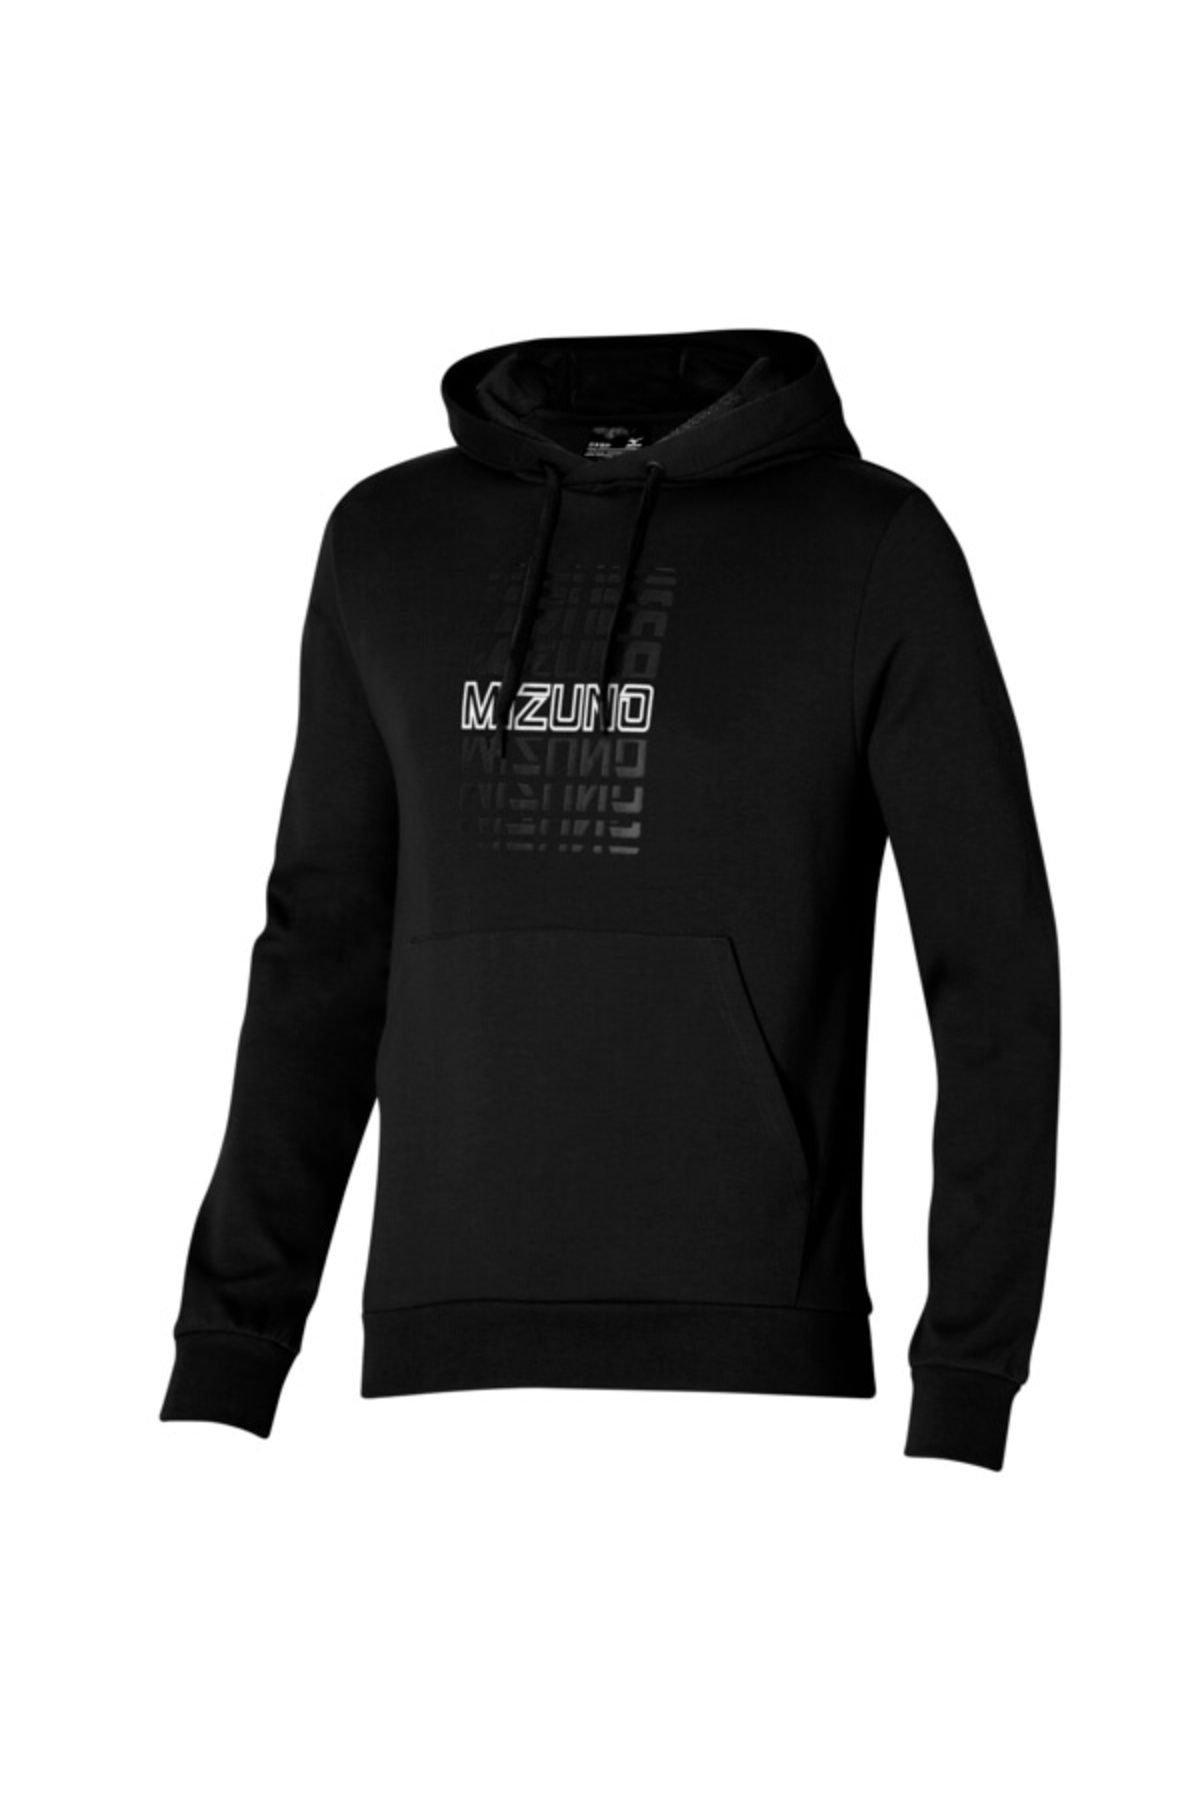 Mizuno Graphic Hoody Erkek Sweatshirt Siyah